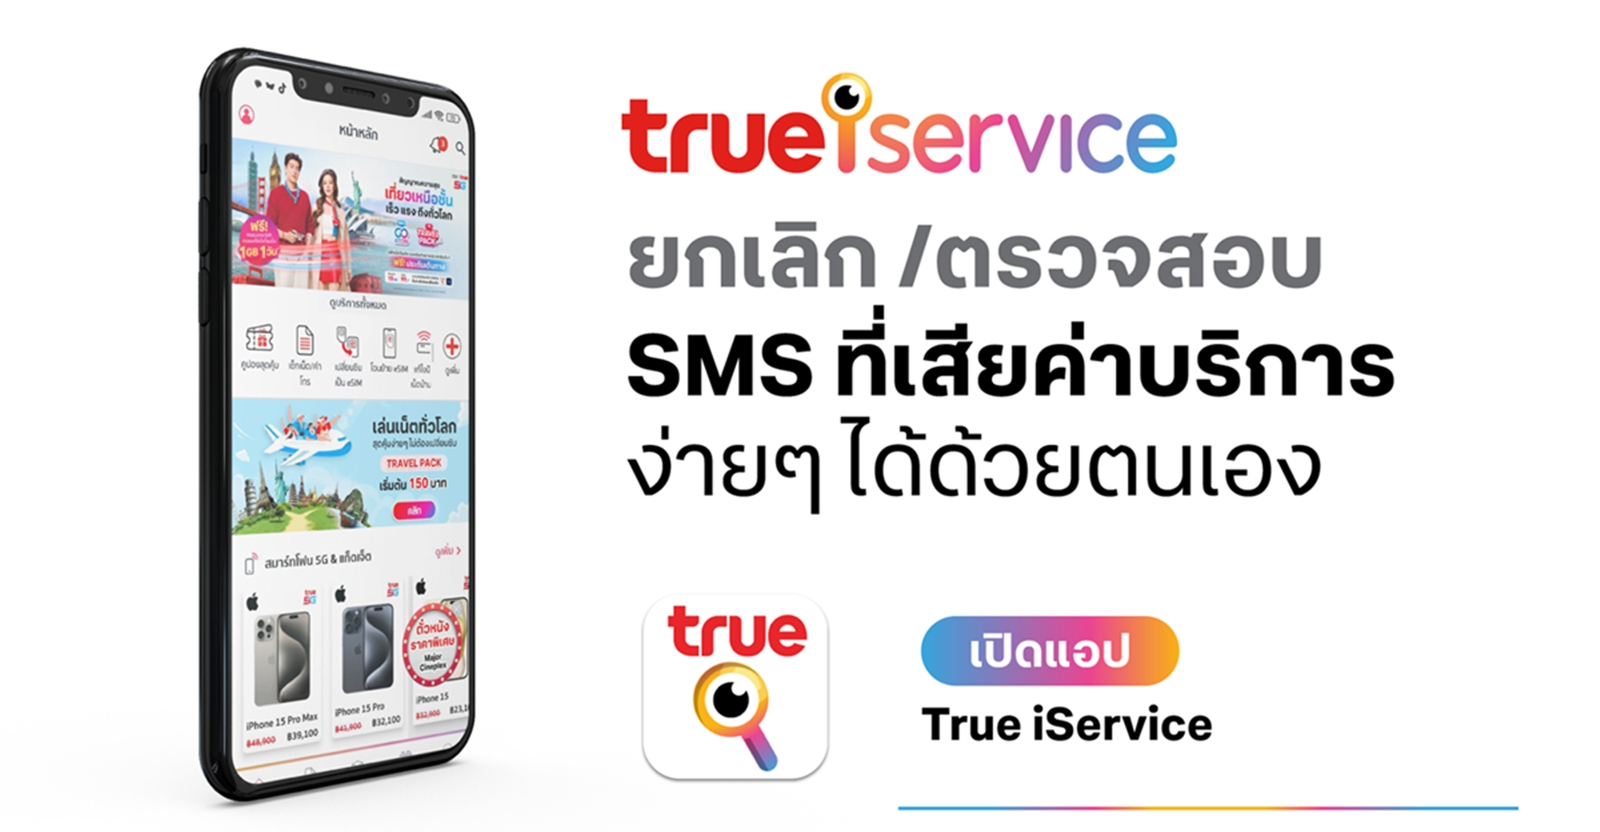 ทรู เปิดปฎิบัติการเชิงรุก ลุยแก้ปัญหา SMS คอนเทนท์ ให้เช็คค่าบริการ - ยกเลิก SMS ผ่านแอป True iService ได้เองเลย